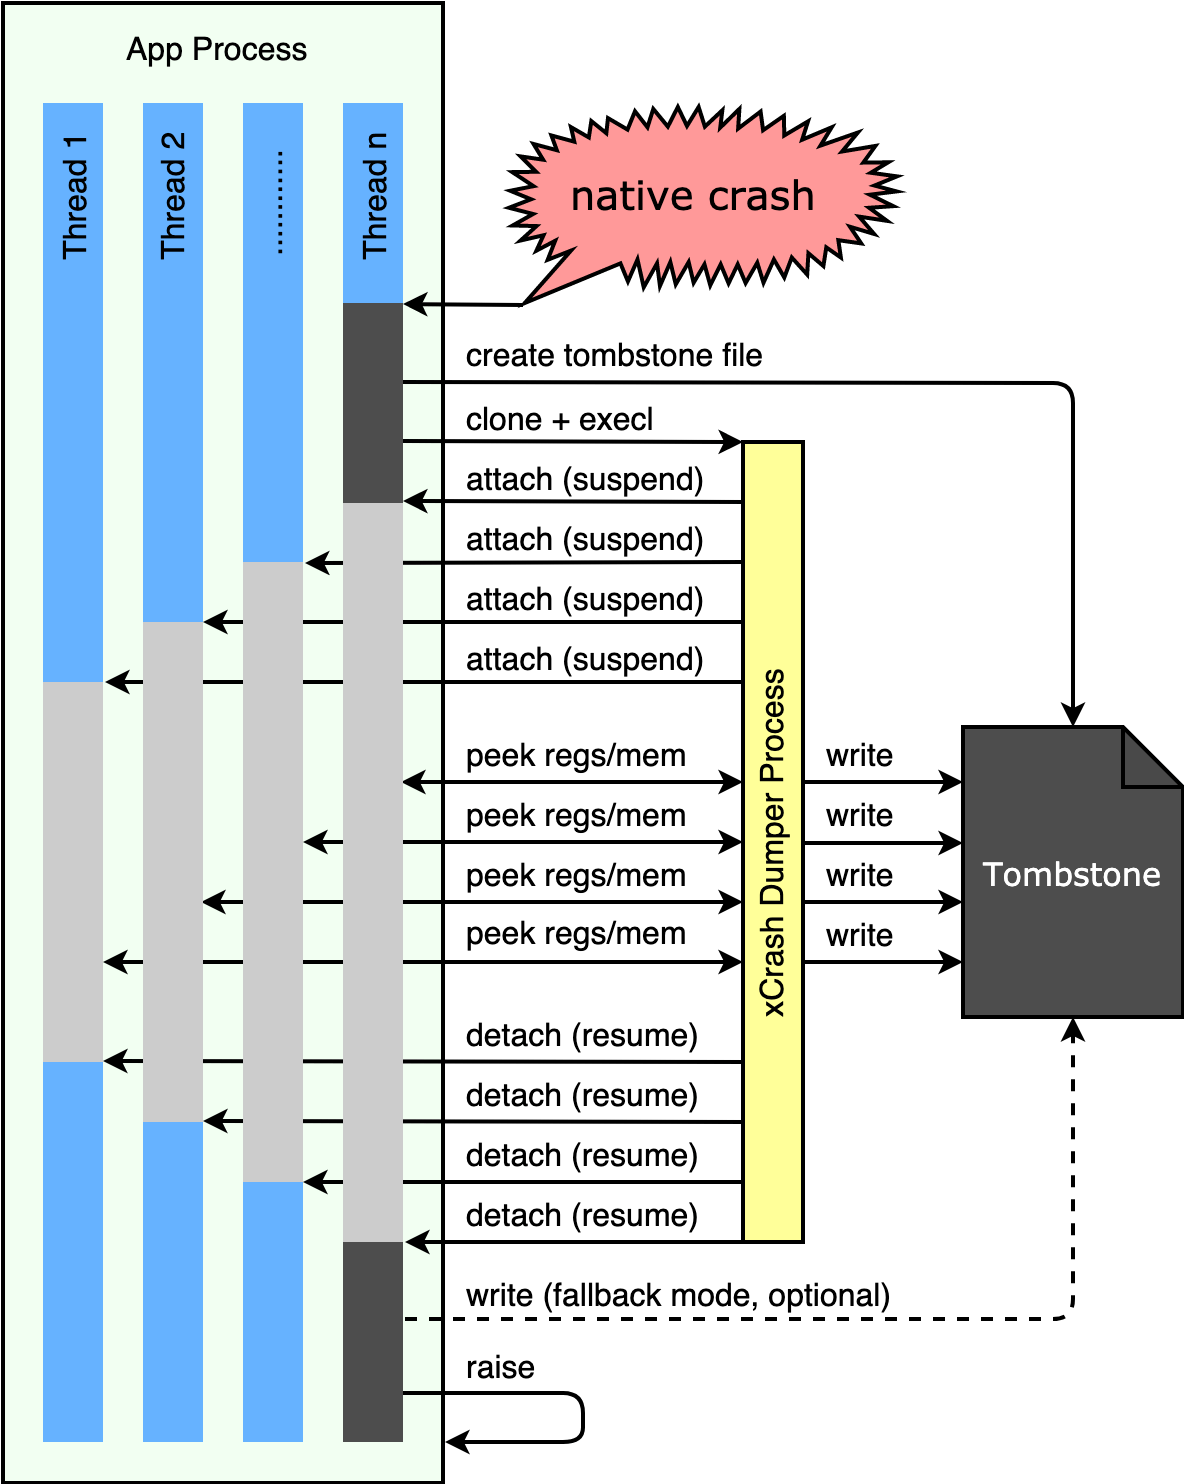 capture_native_crash.png